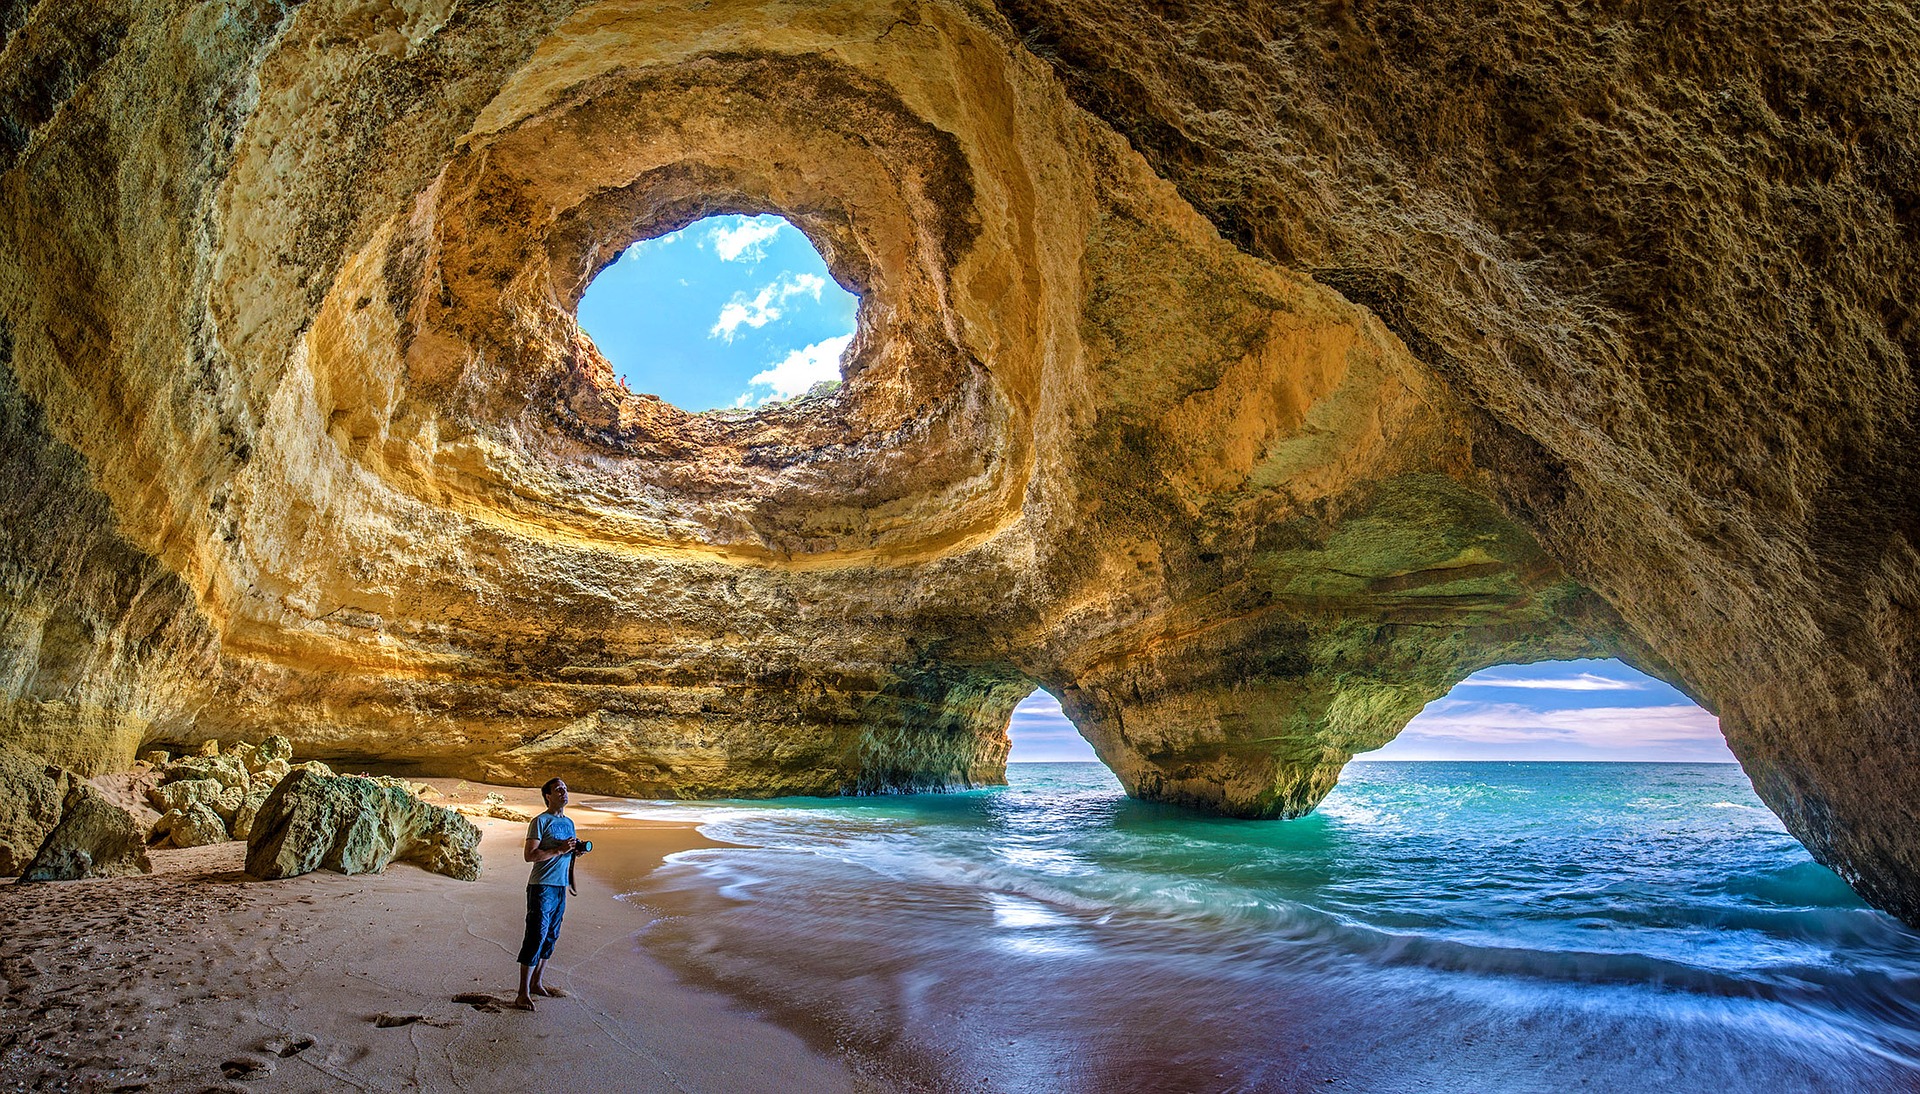 Meereshöhlen an der Algarve machen diesen Ort noch beliebter